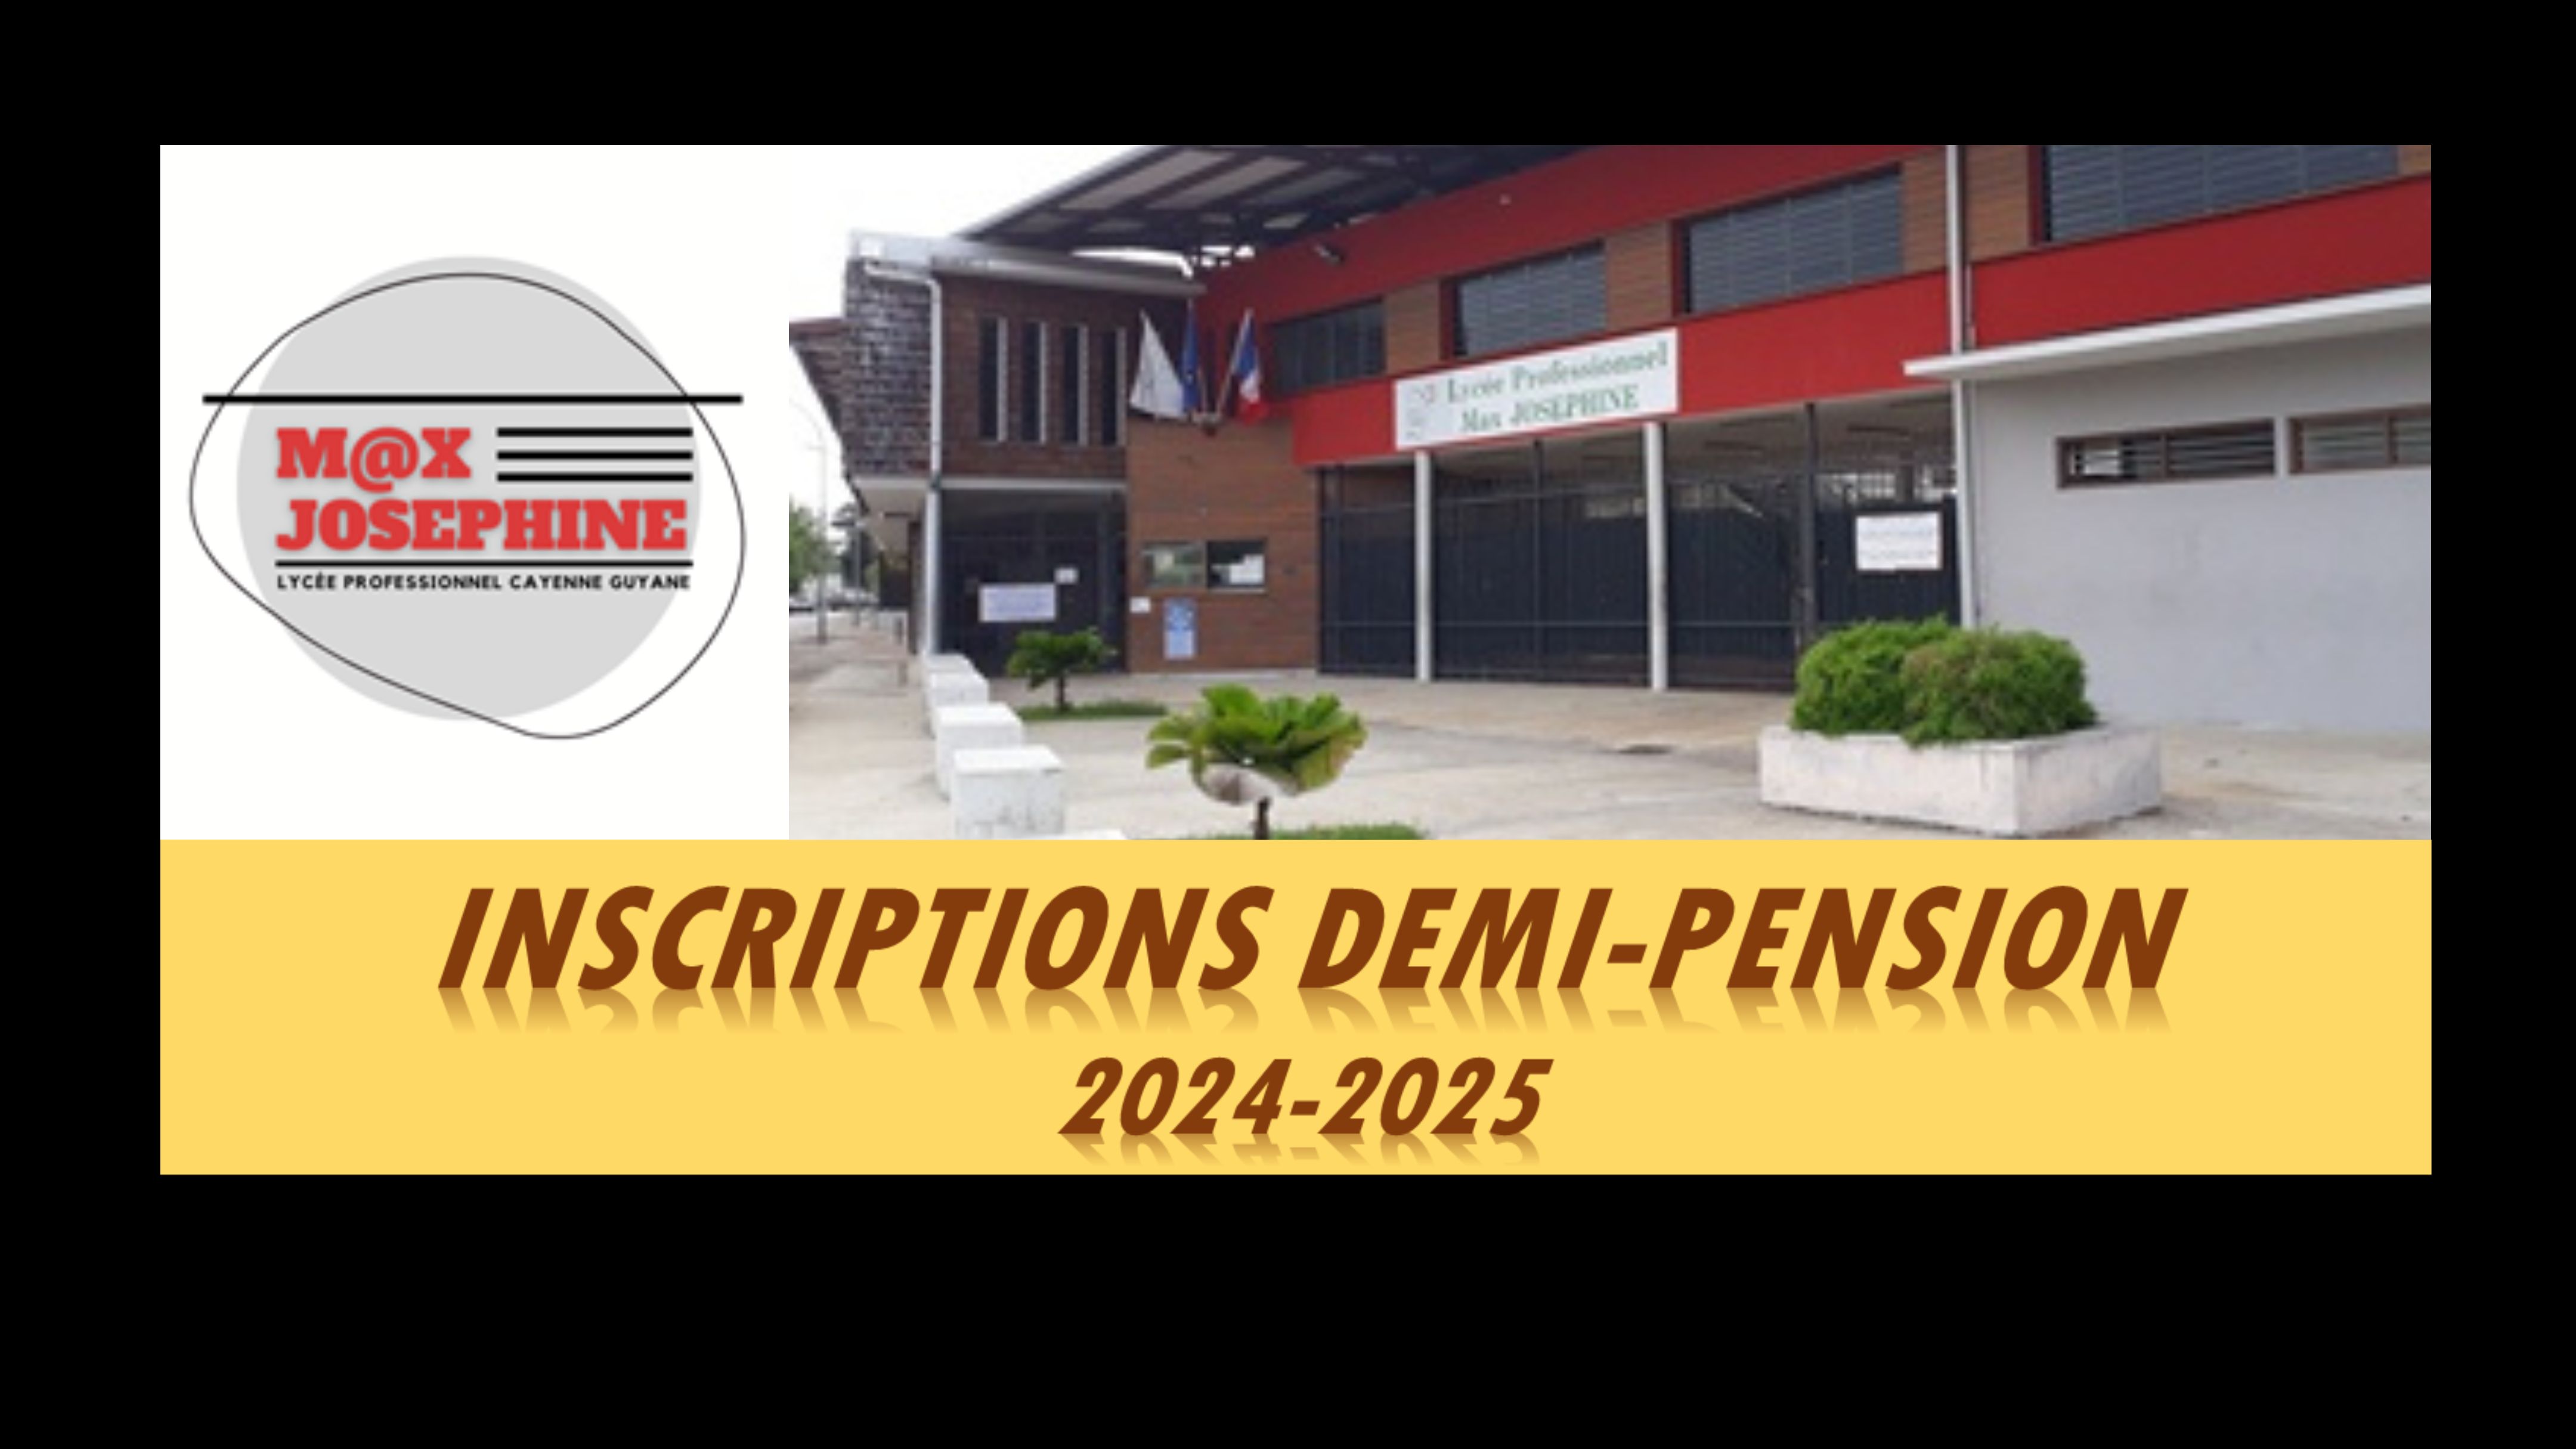 INSCRIPTION DEMI-PENSION 2024-2025